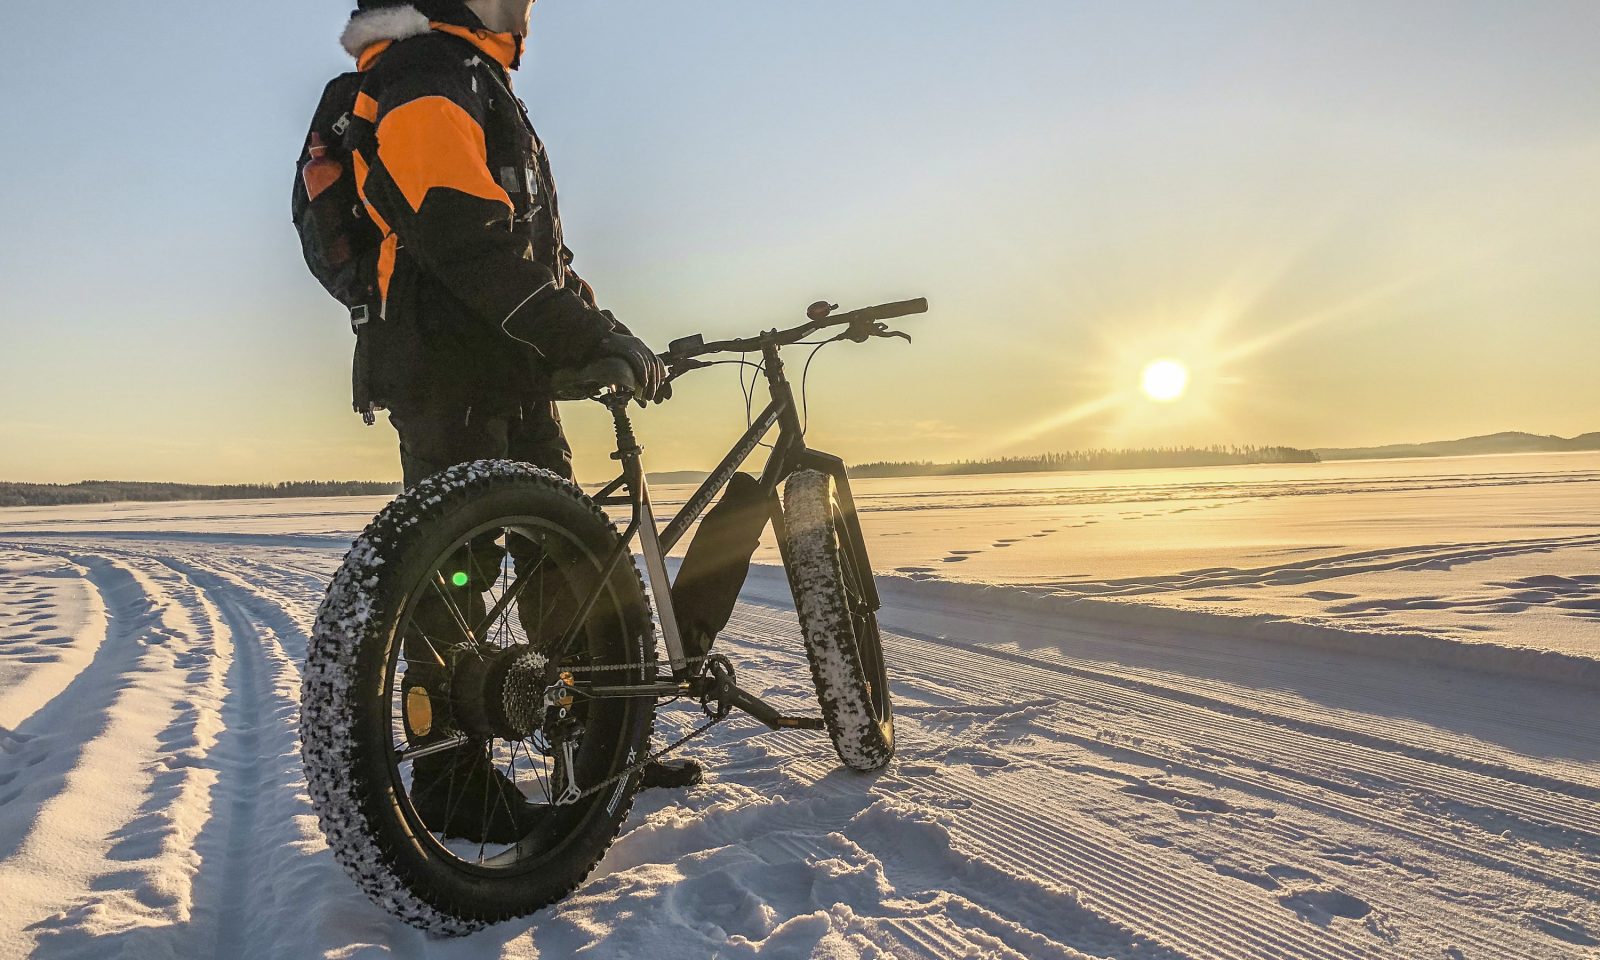 Bomba / Välinevuokraus, e-bike, sähkökäyttöinen pyörä, talvi-aktiviteetit, Villi Pohjola / Wild Nordic Finland @wildnordicfinland